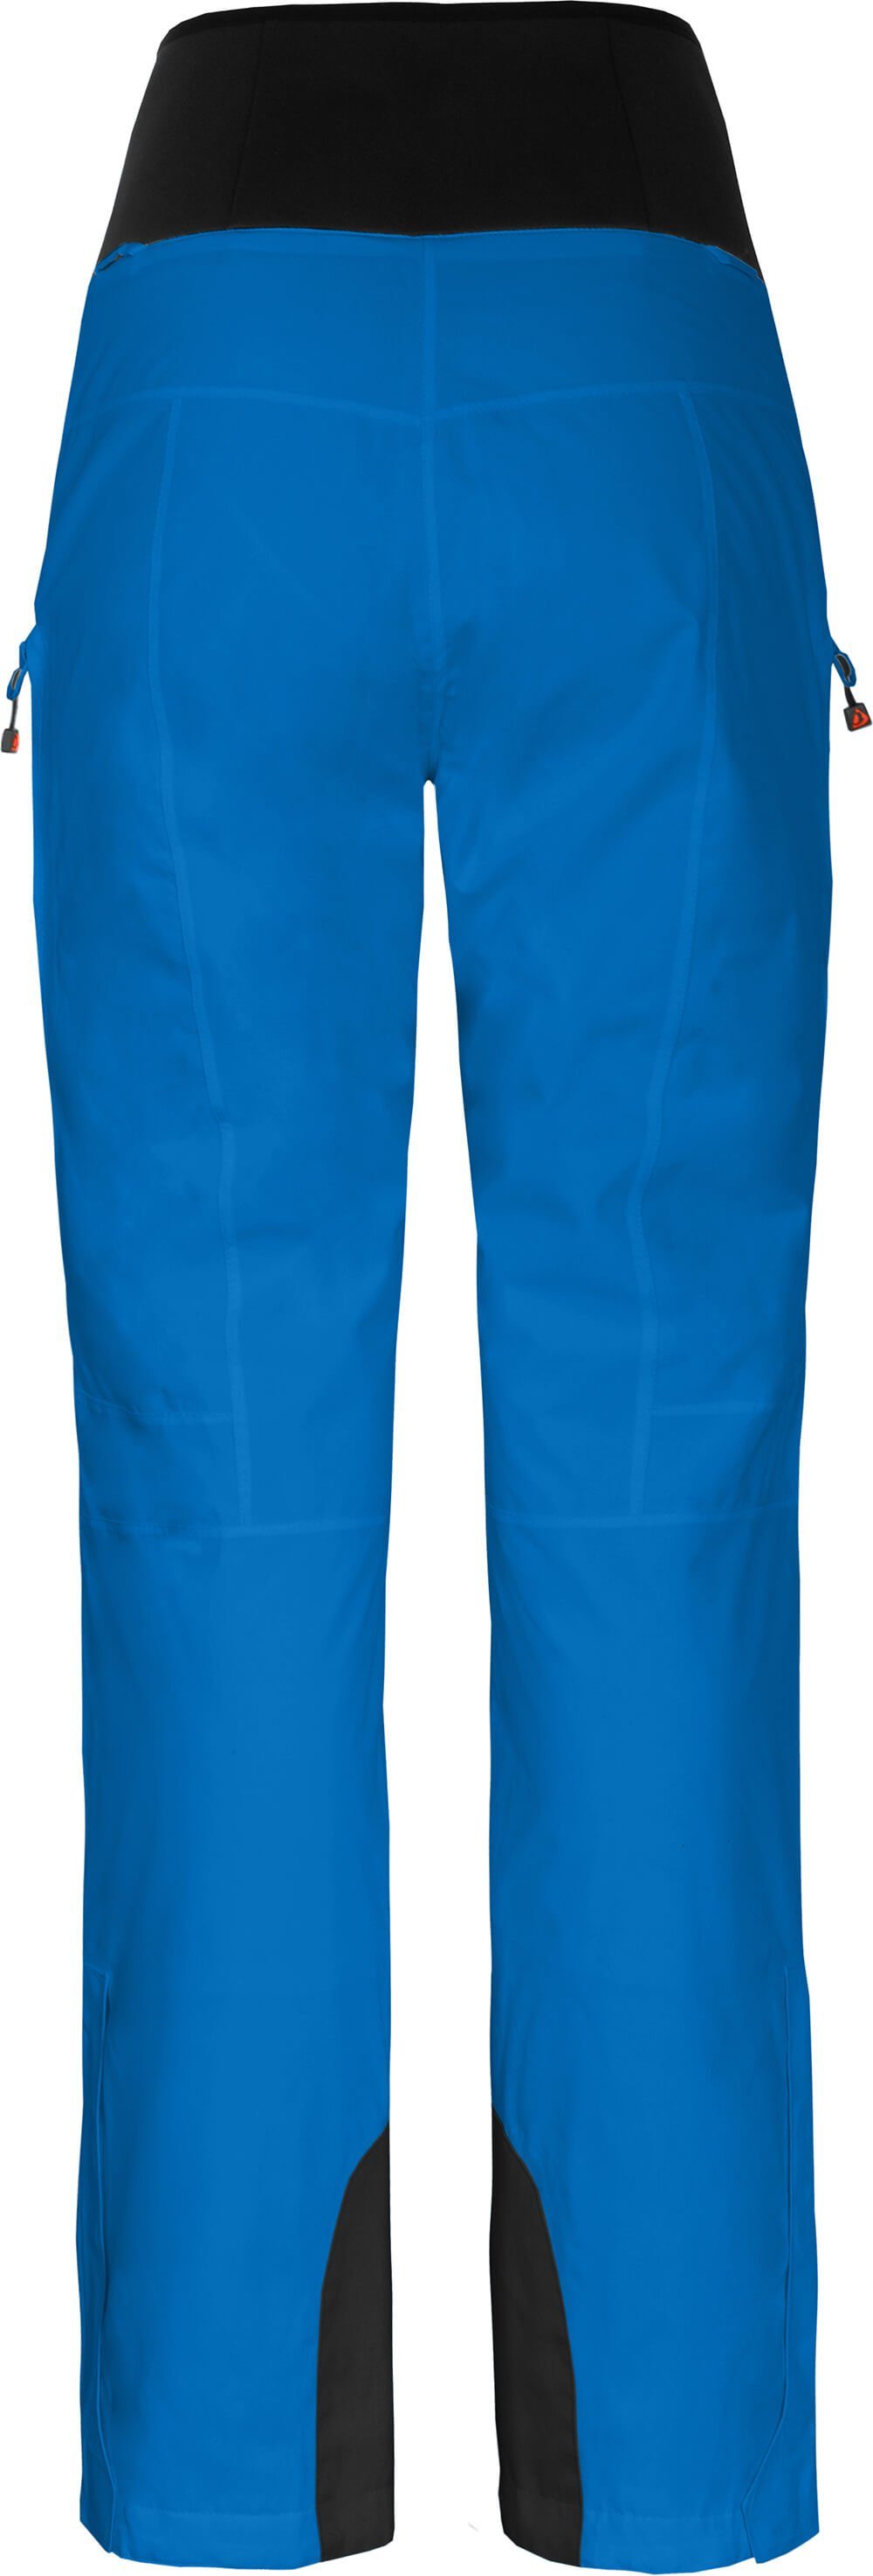 Skihose Wassersäule, Damen blau Normalgrößen, Bergson mm 20000 wattiert, MIEN Skihose, Slim